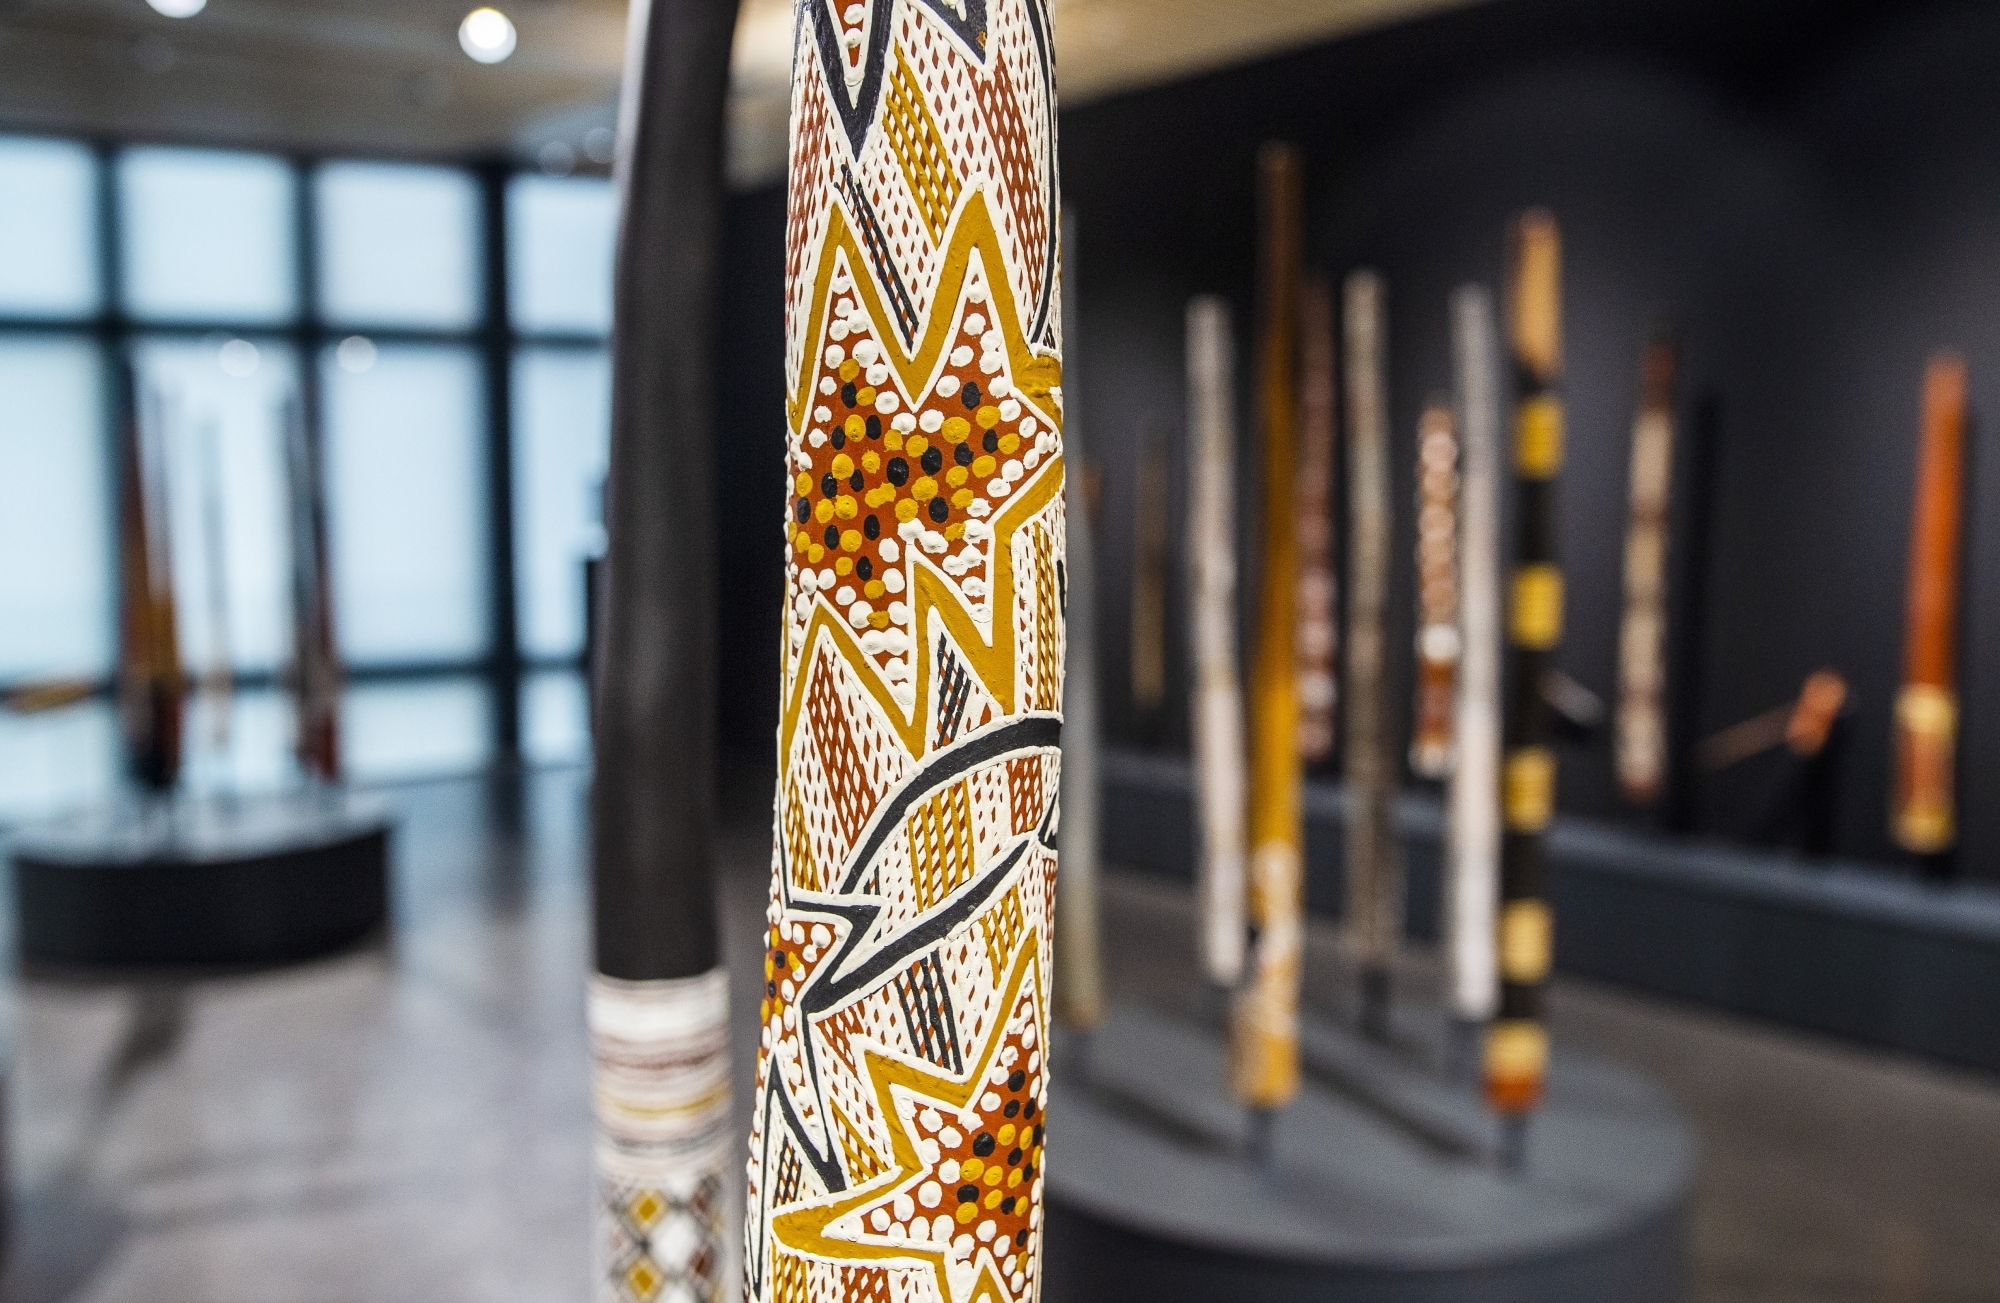 La Fondation Opale rassemble plus de 70 didgeridoos pour sa nouvelle exposition, une première mondiale!